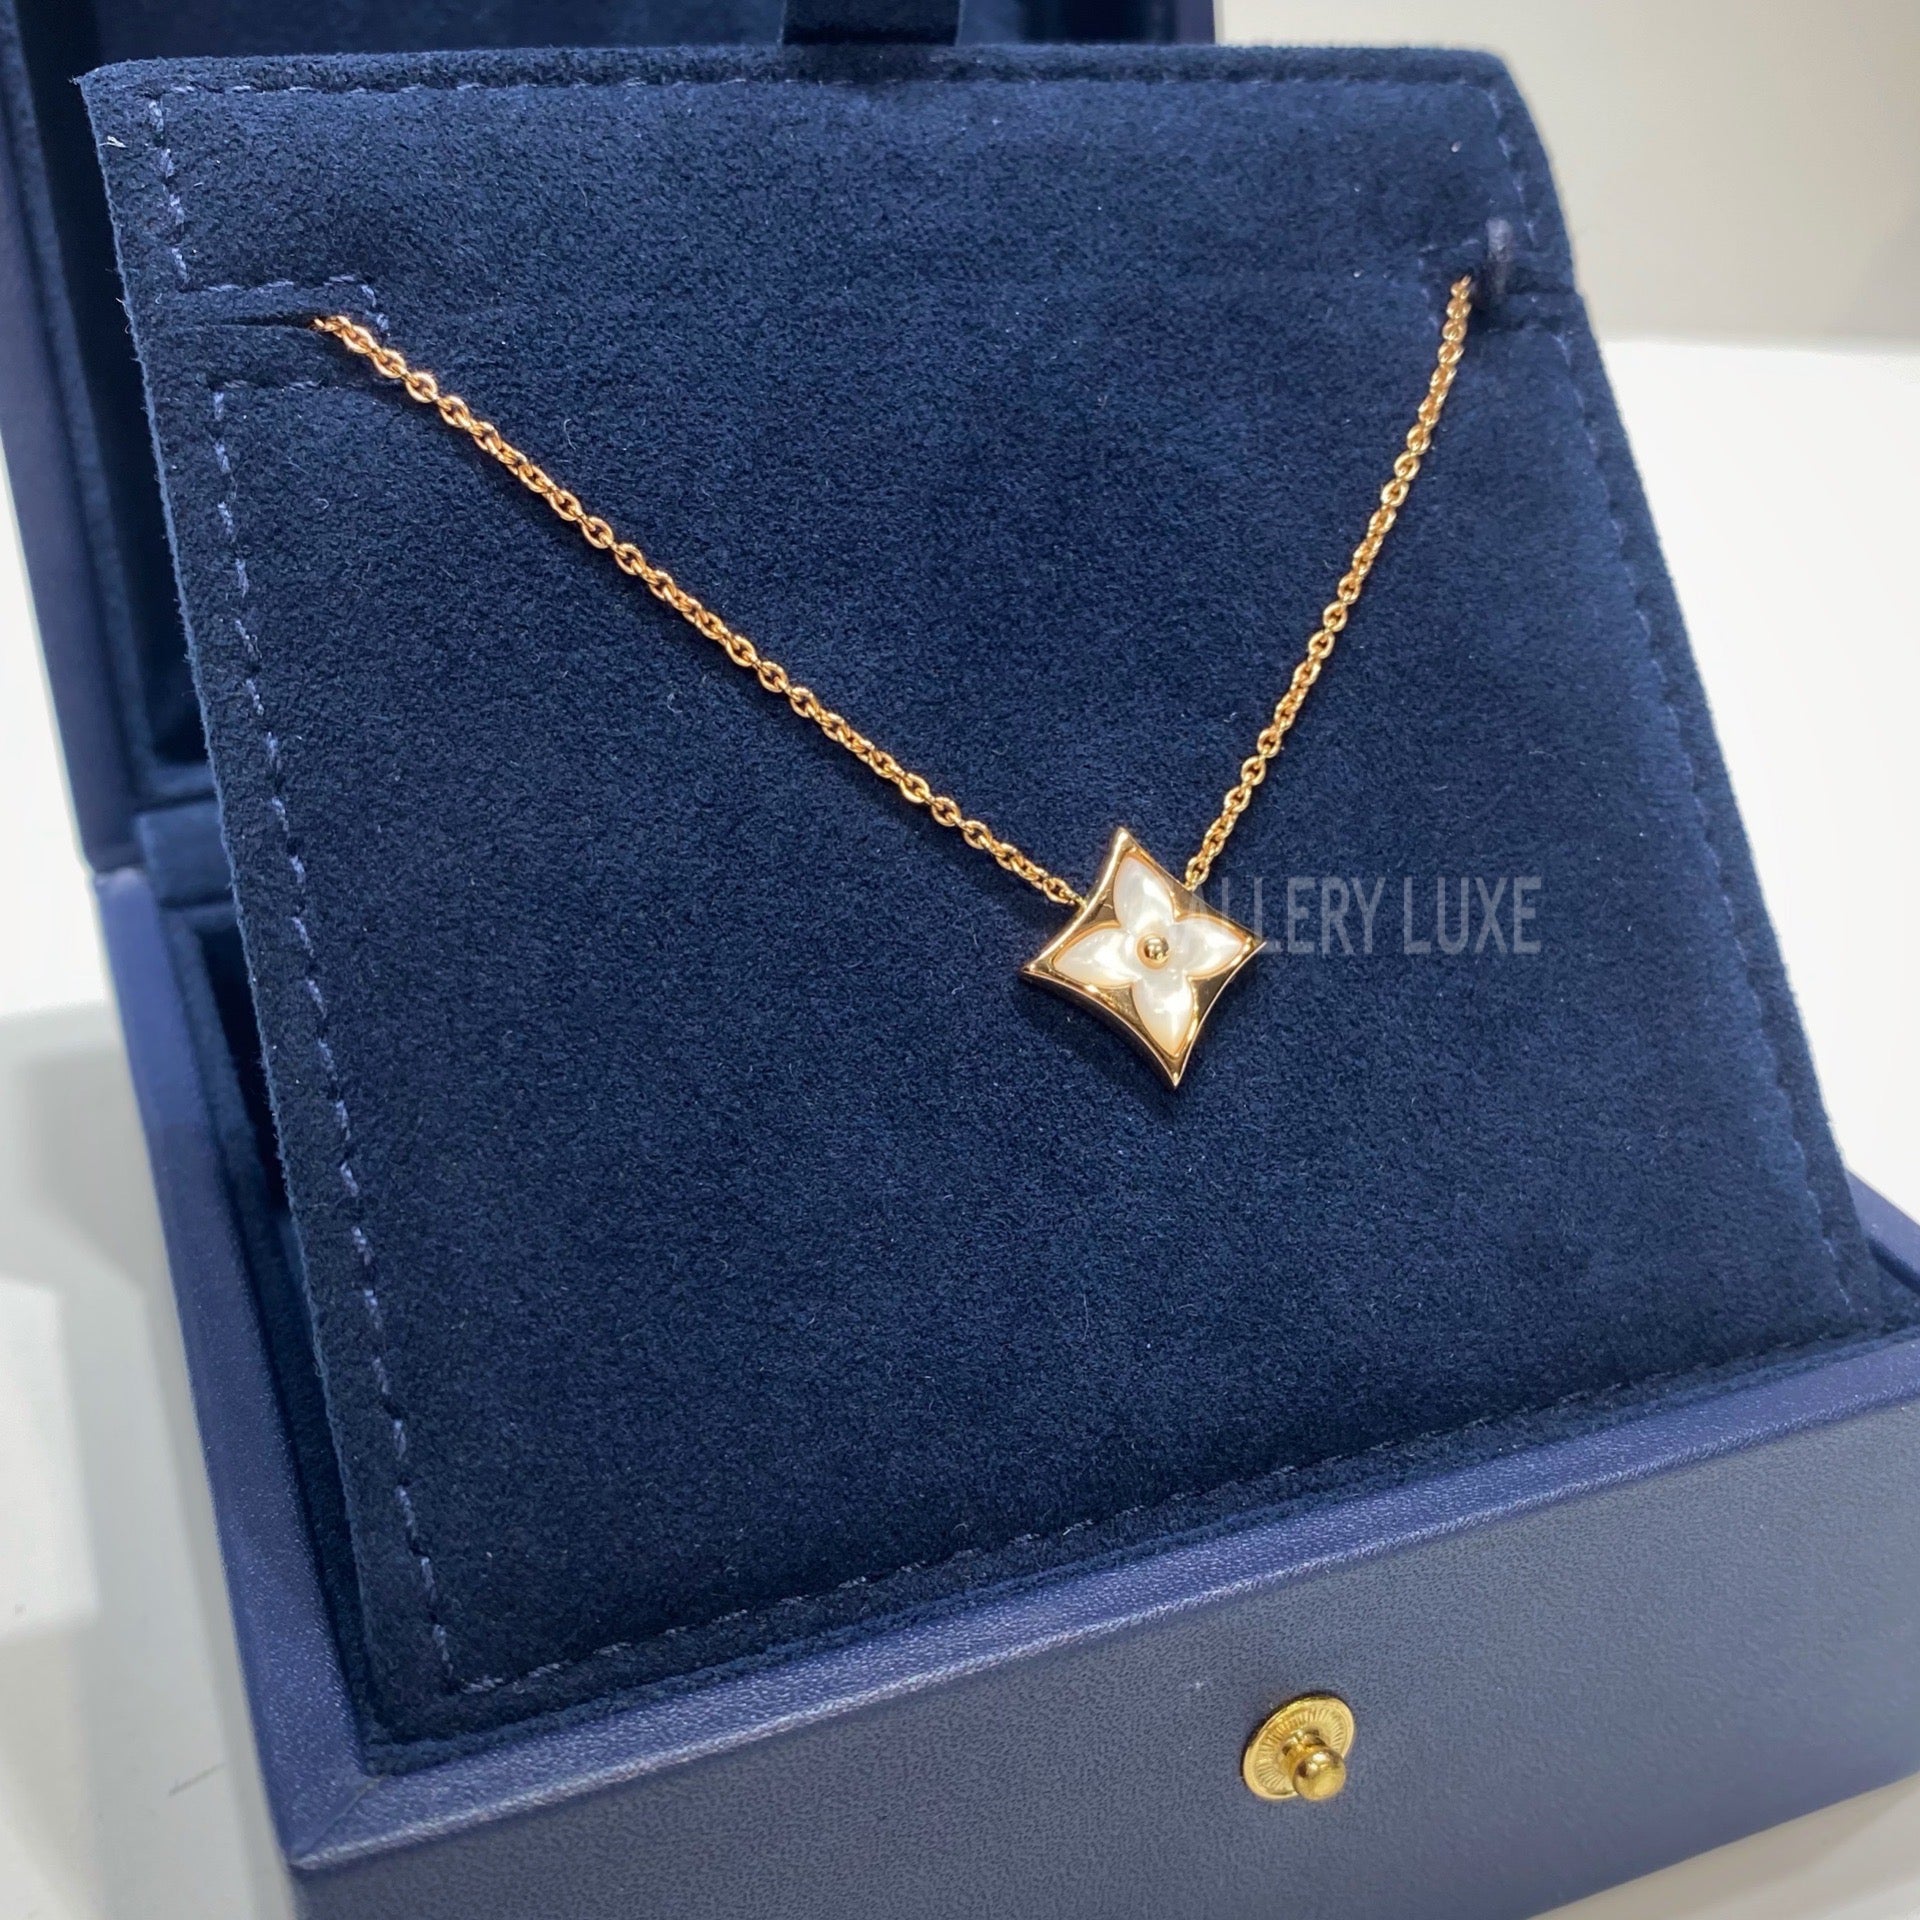 Louis Vuitton Color Blossom BB Star Pendant Necklace - THE PURSE AFFAIR